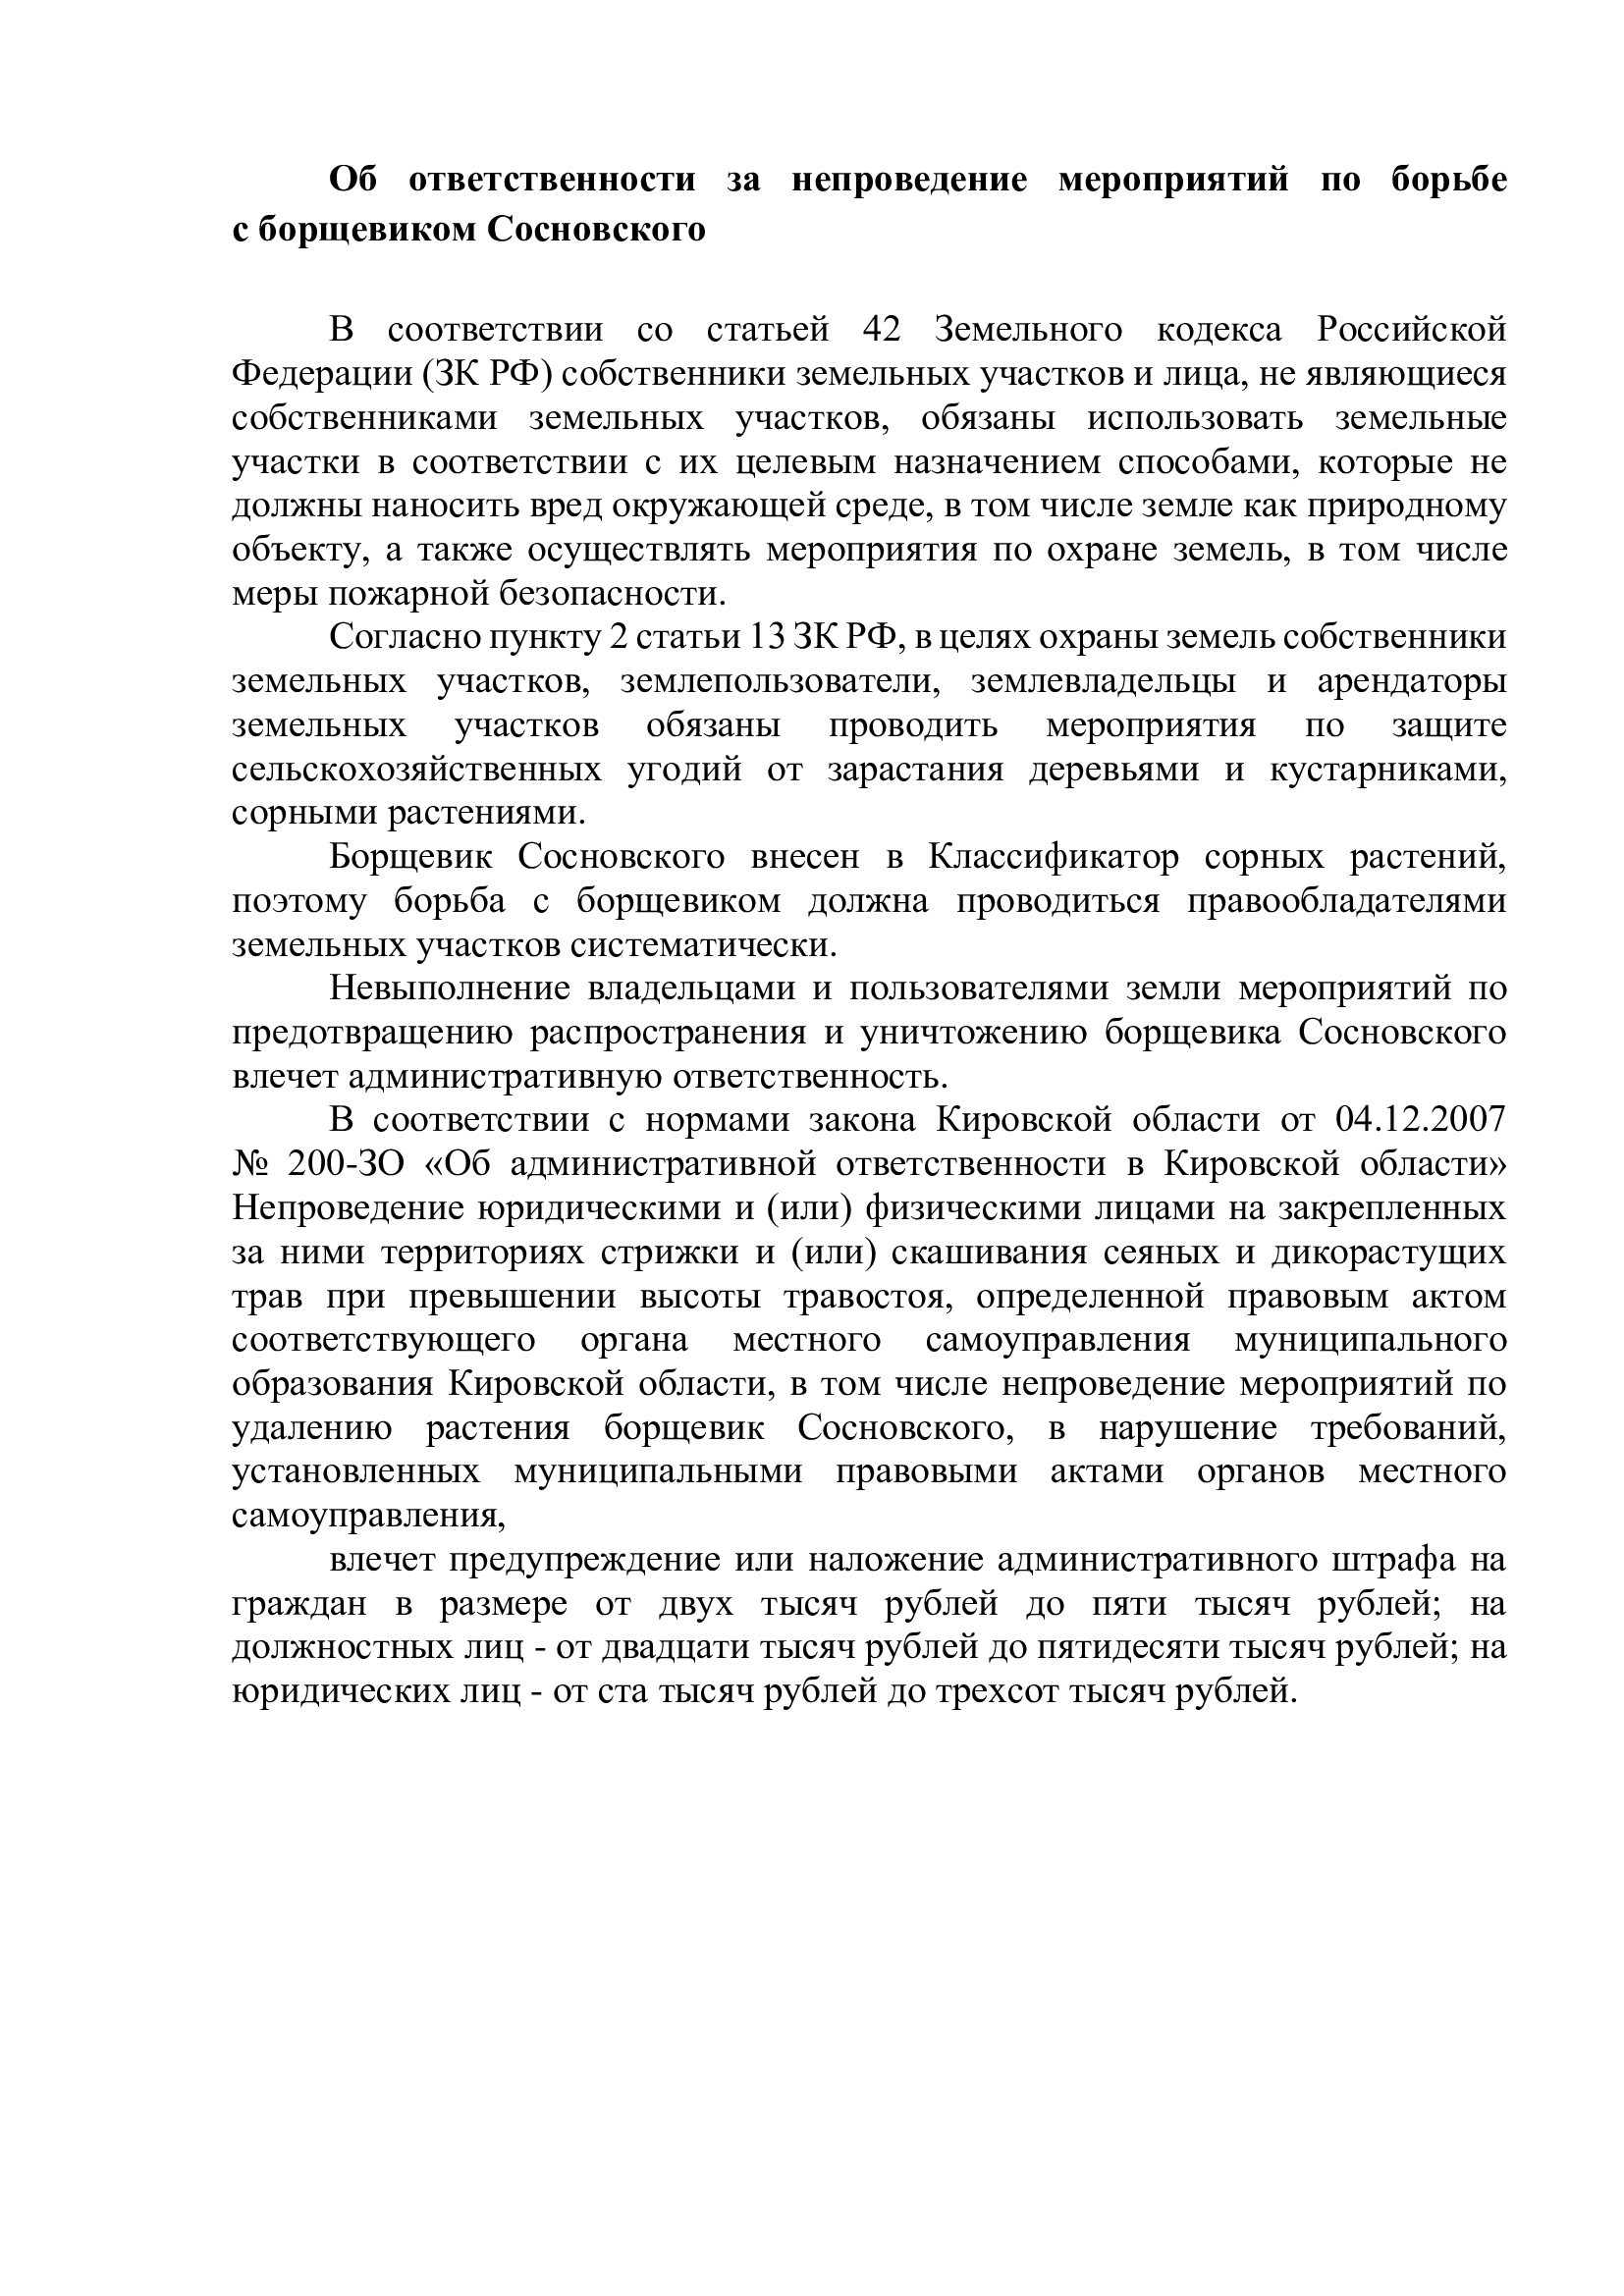 Об ответственности за непроведение мероприятий по борьбе                   с борщевиком Сосновского.